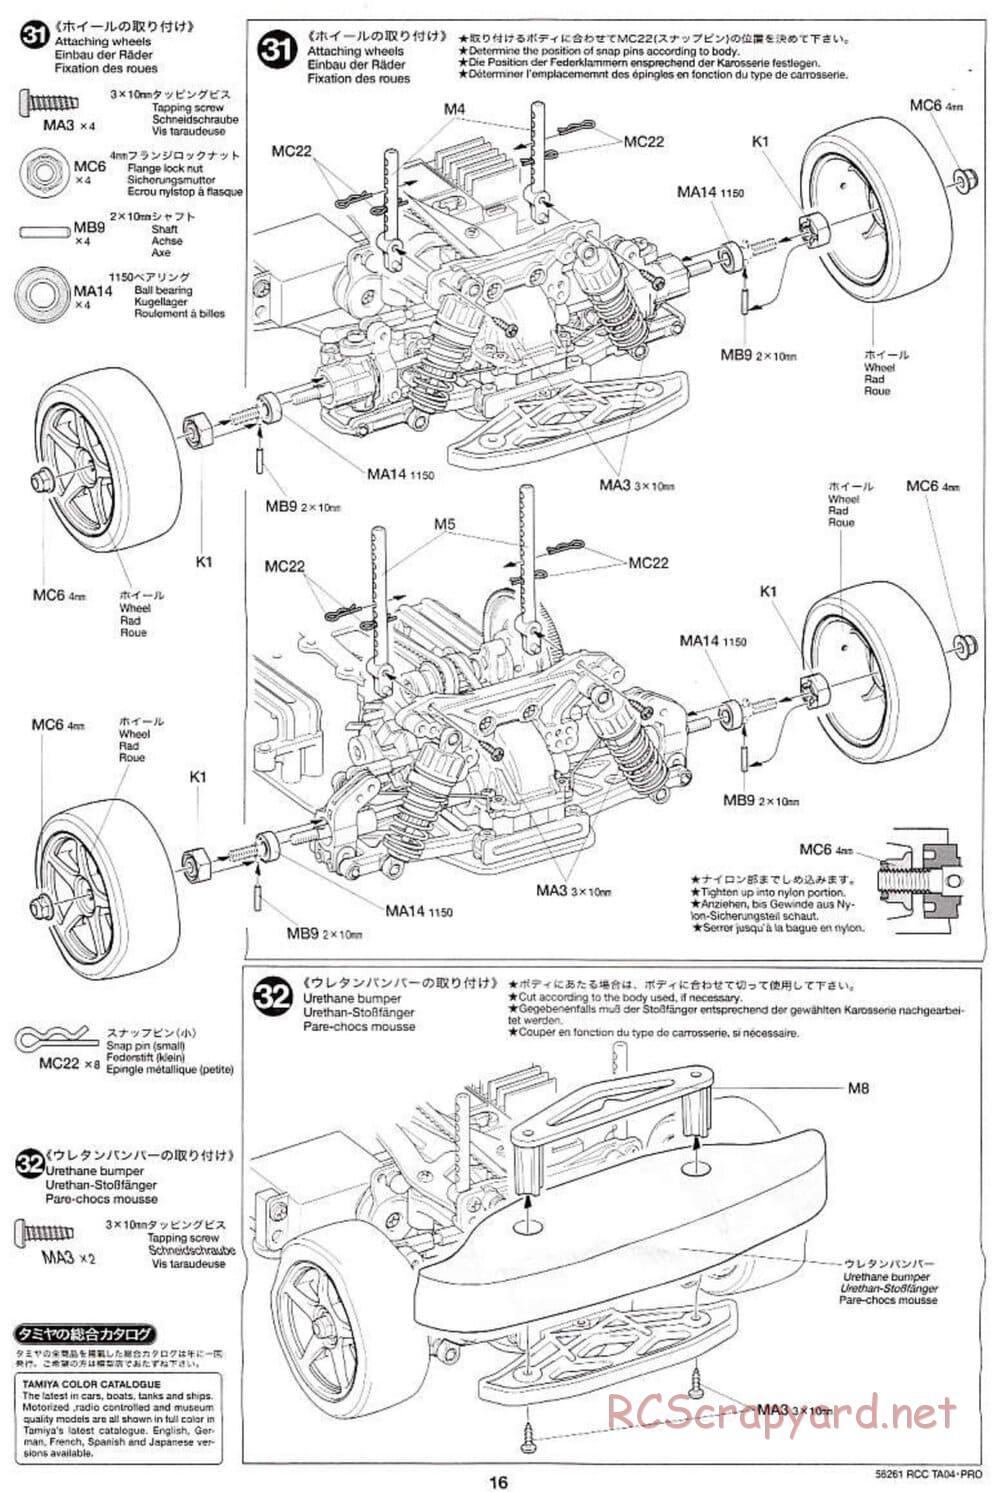 Tamiya - TA-04 Pro Chassis - Manual - Page 16